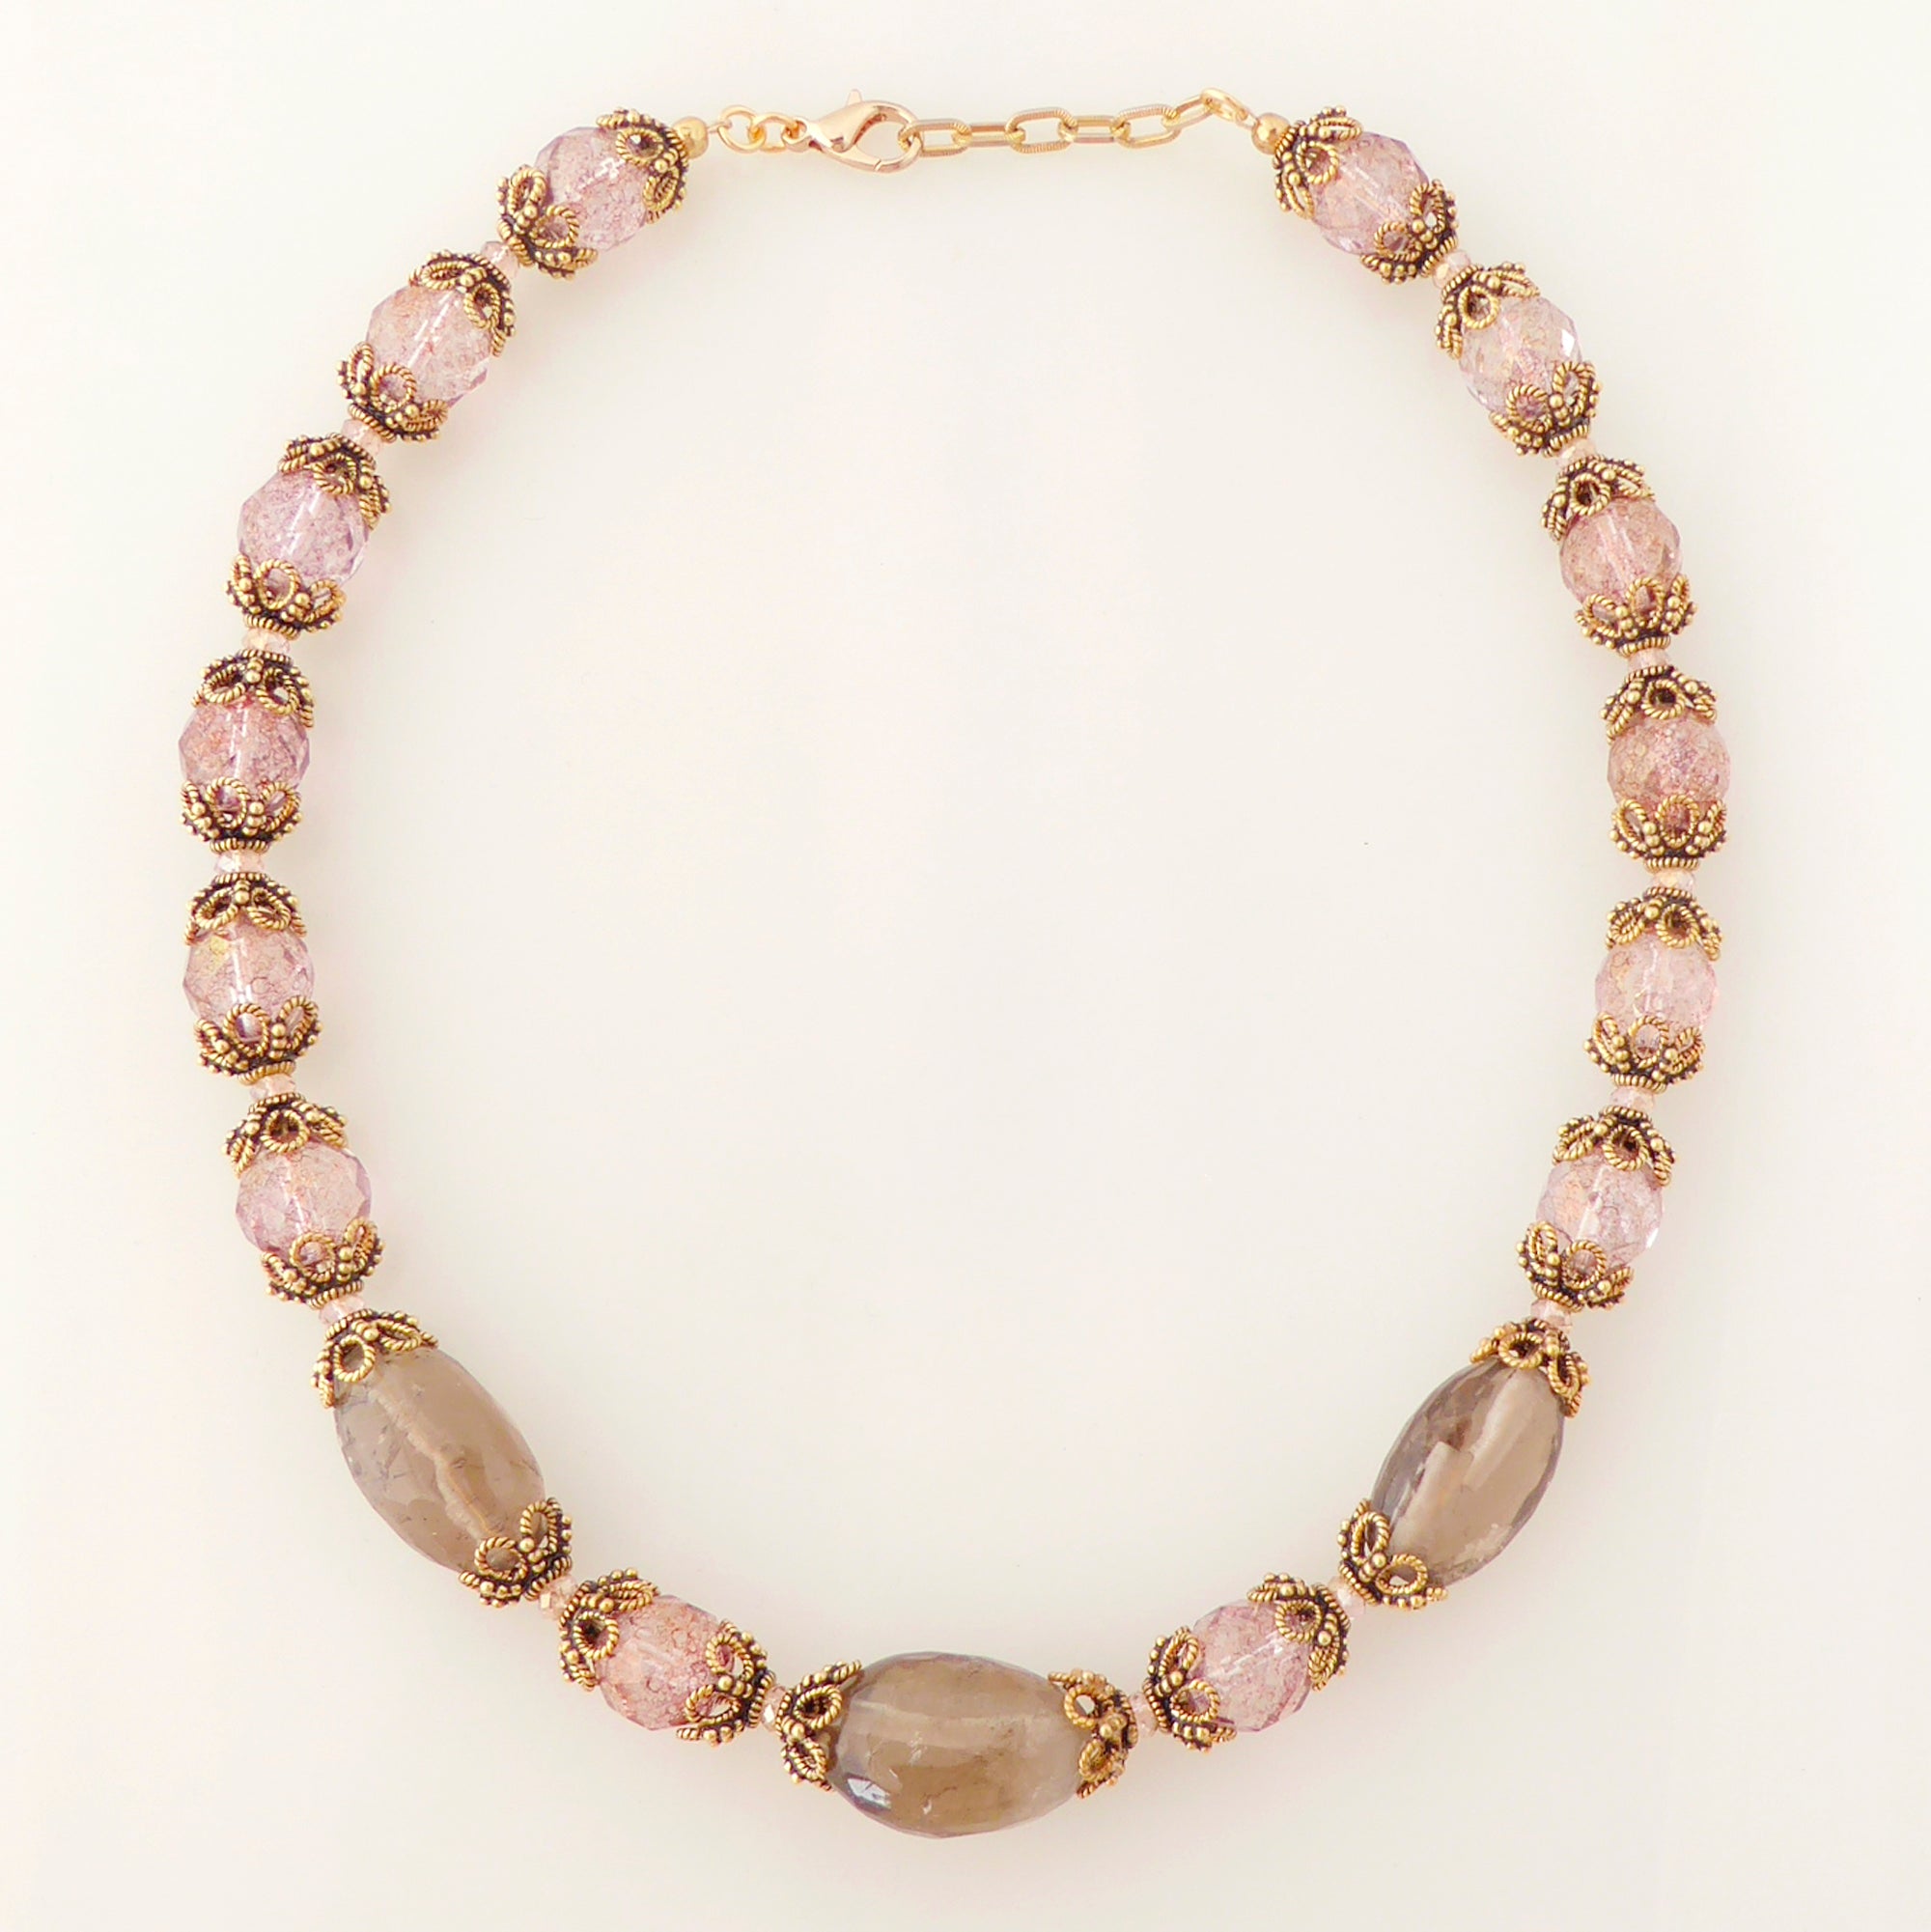 Greige quartz rococo necklace by Jenny Dayco 6